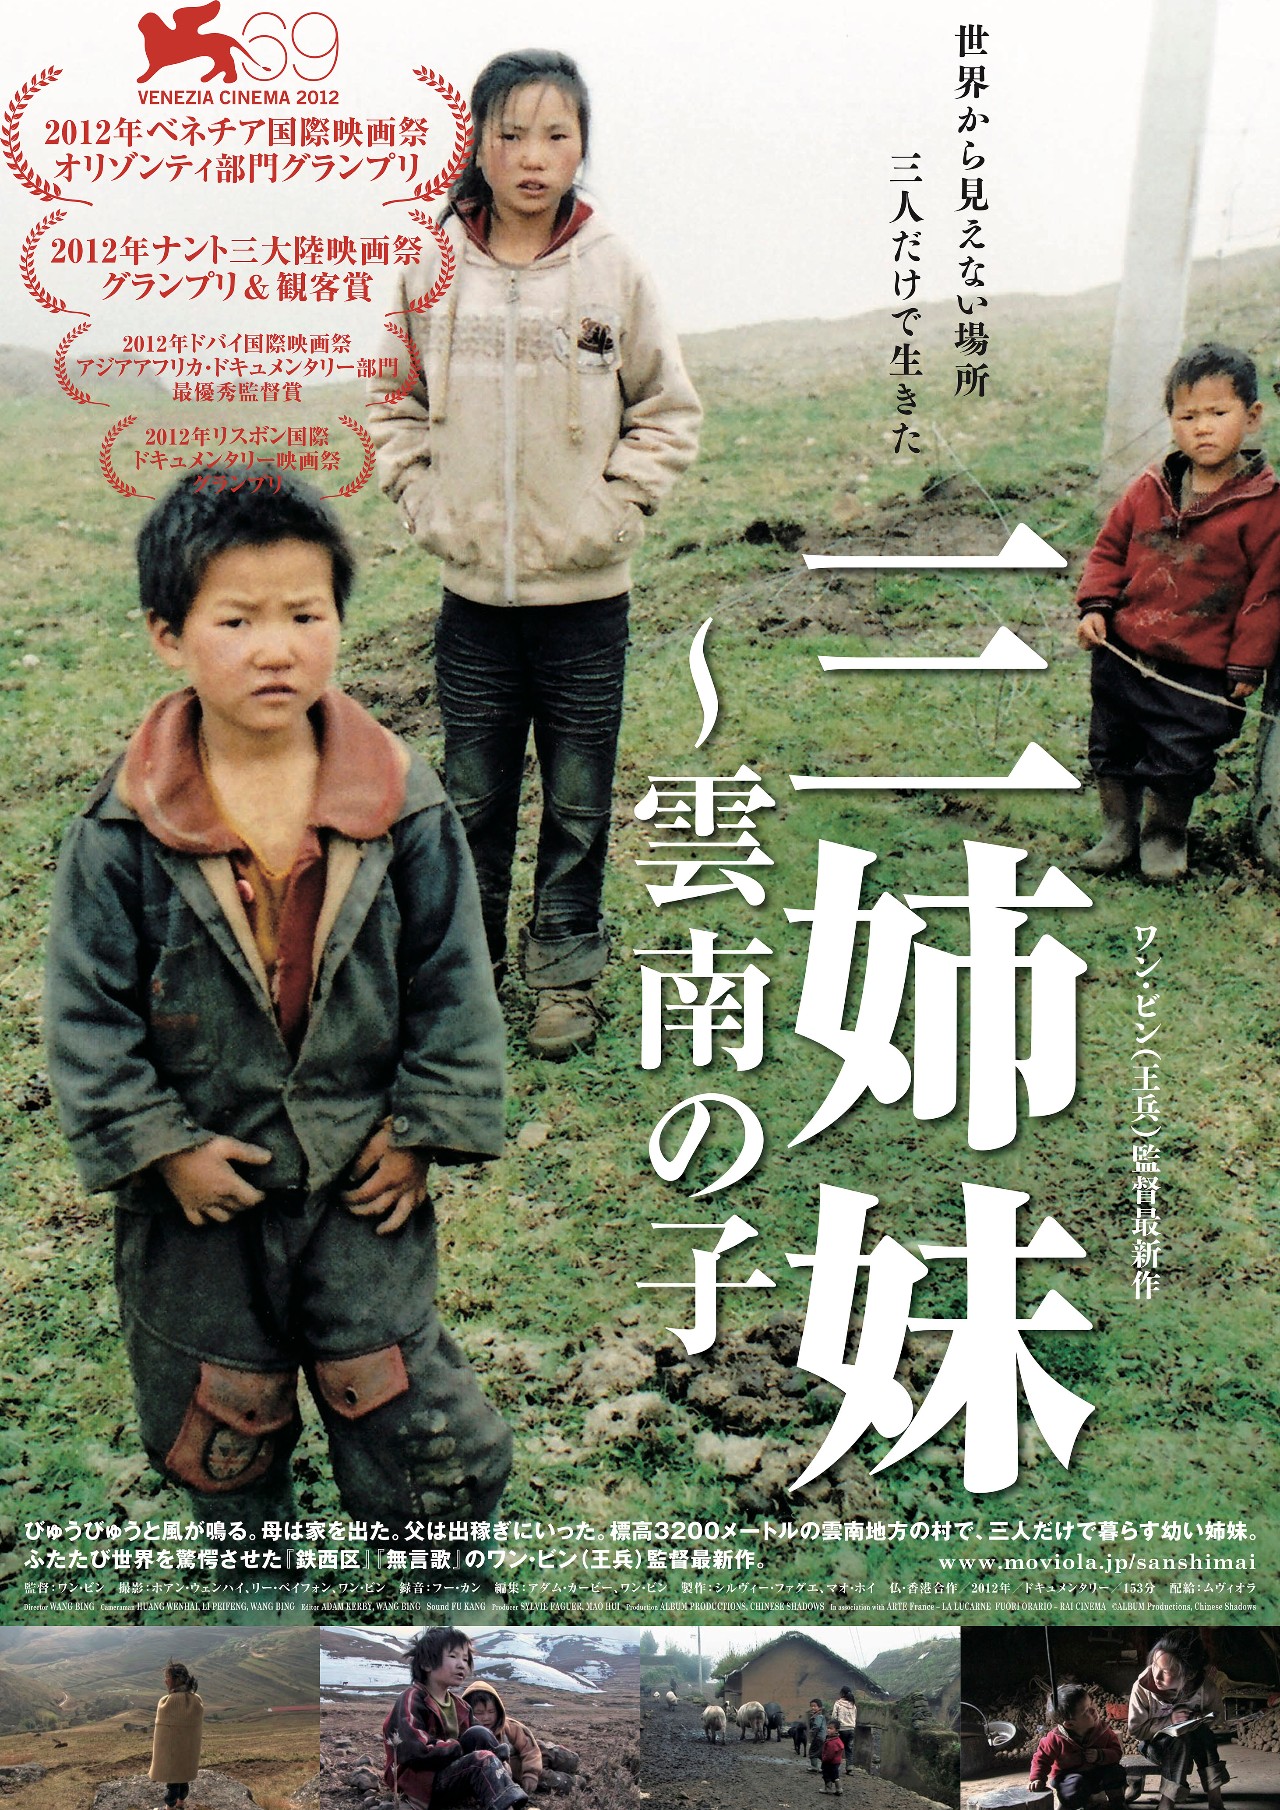 电影《三姊妹》以纪录片的形式讲述了在云南某个村庄里的三个姐妹生活